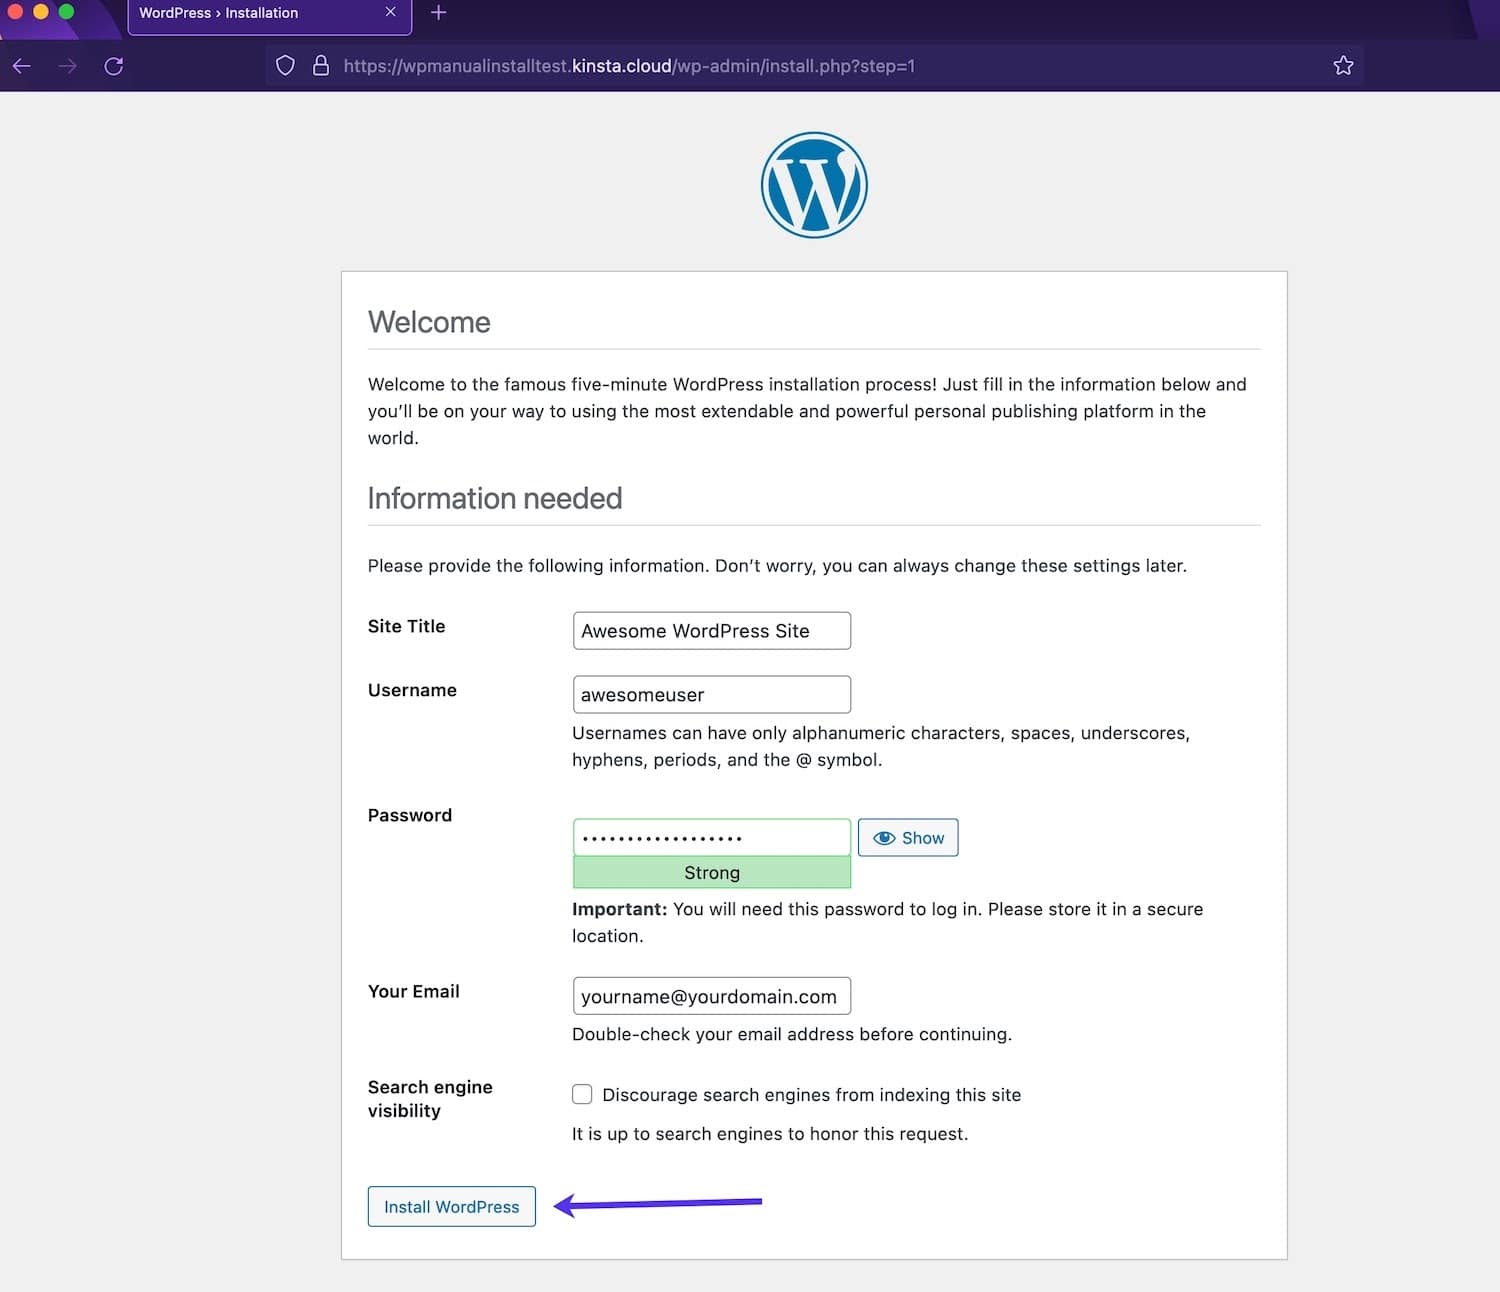 Ange webbplatsinformation i WordPress-installationsprogrammet.